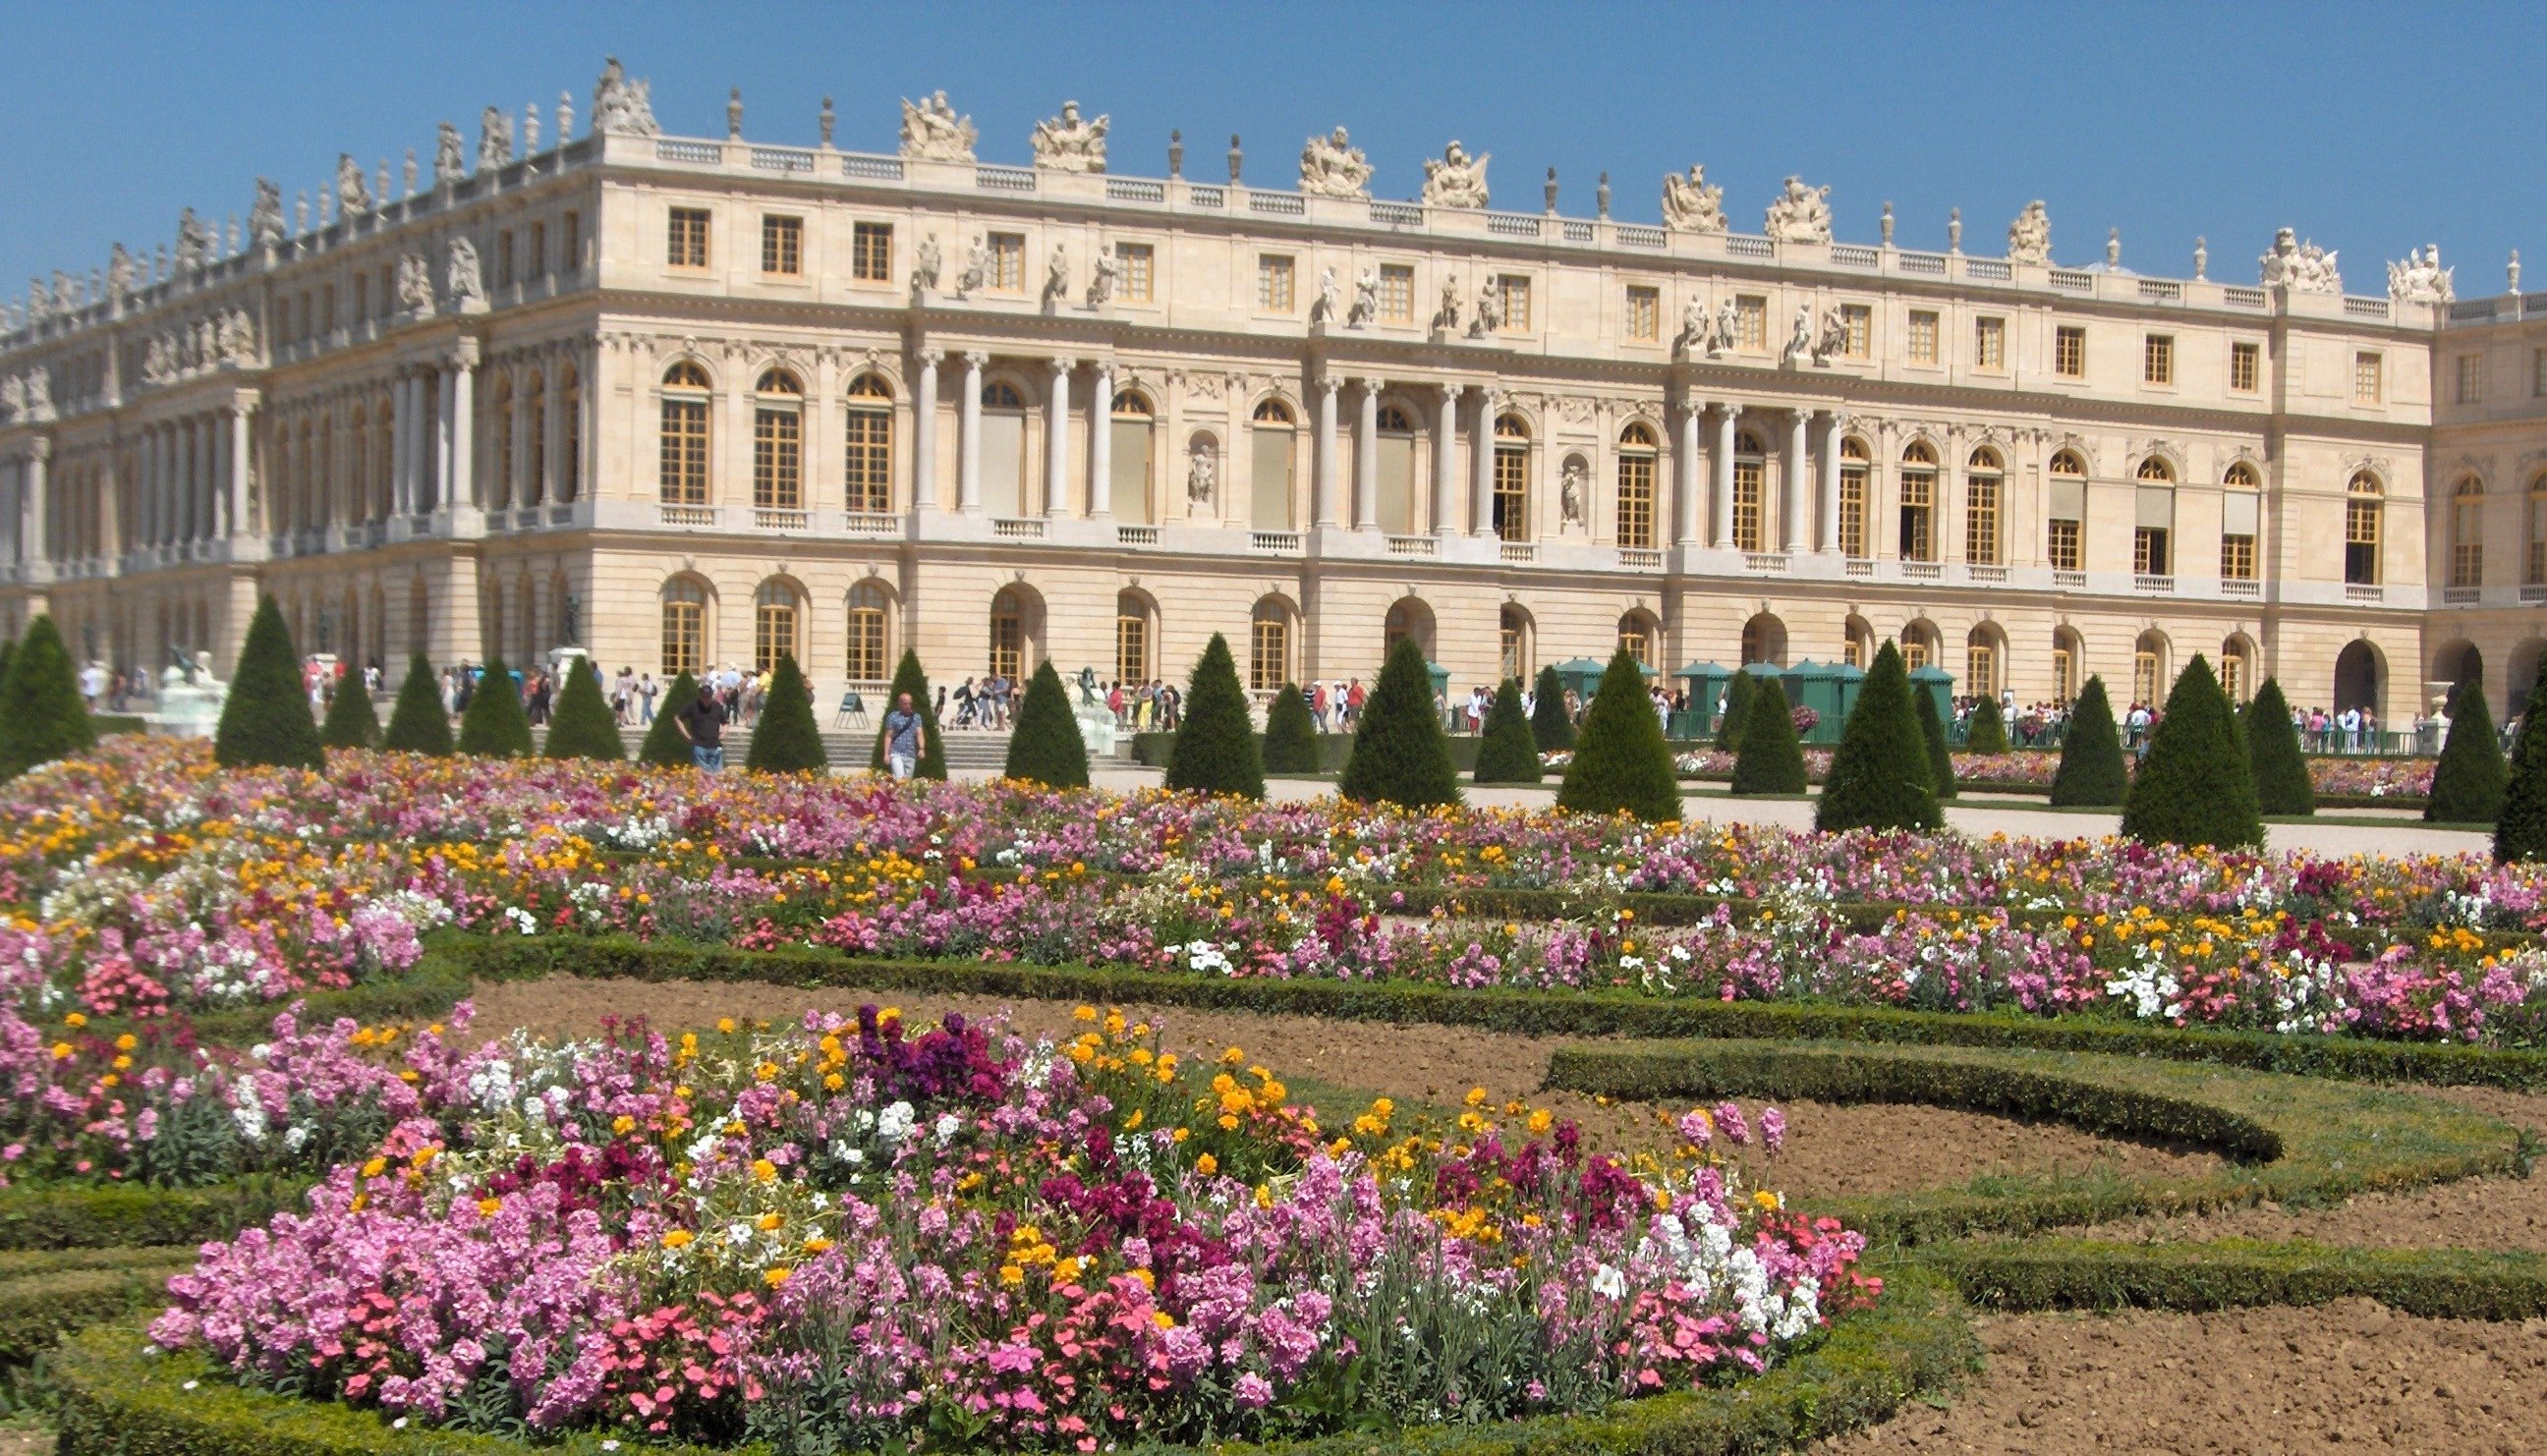 Версальский дворец дворцы Франции. Дворец Версаль версальный парк. Замок Версаль (Chateau de Versailles). Мраморный двор Версальского дворца. Chateau versailles